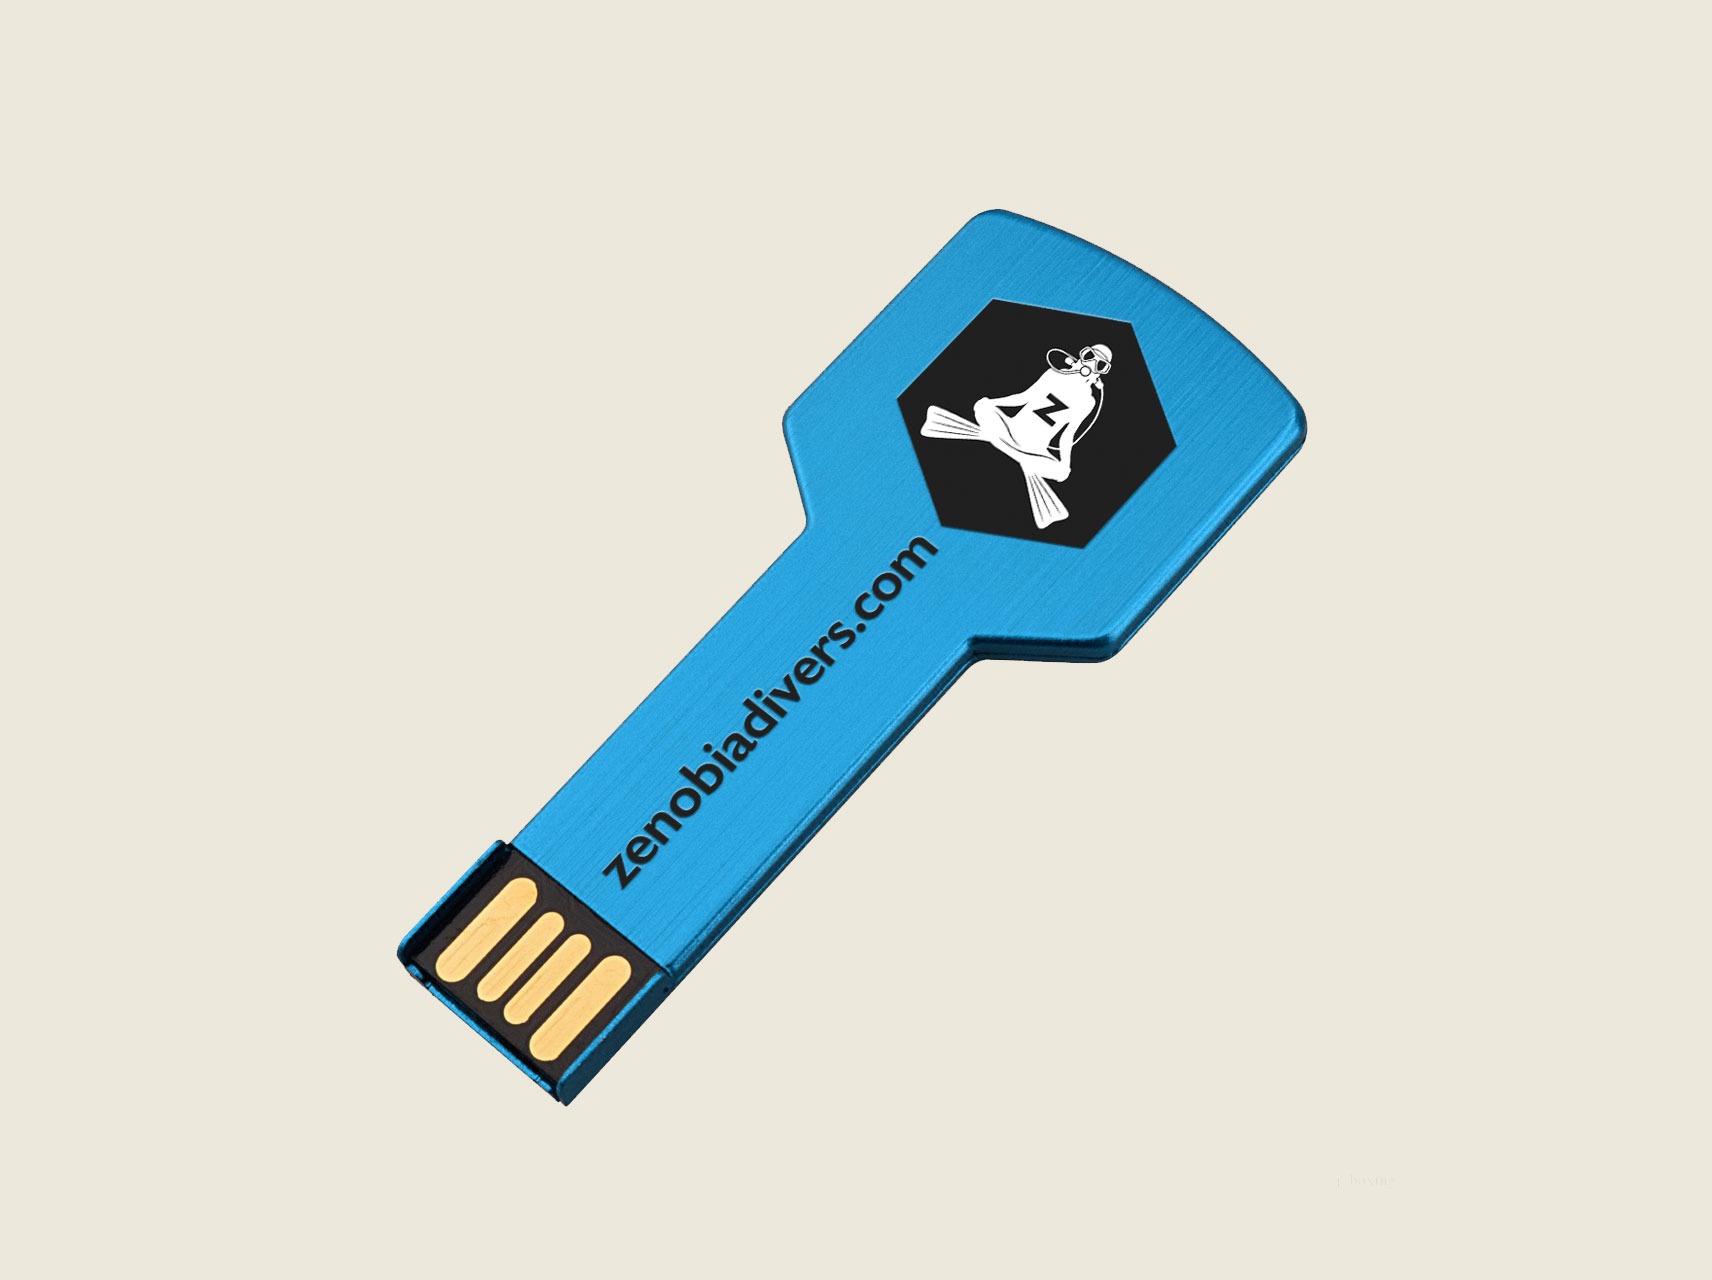 Zenobia Divers branded USB stick